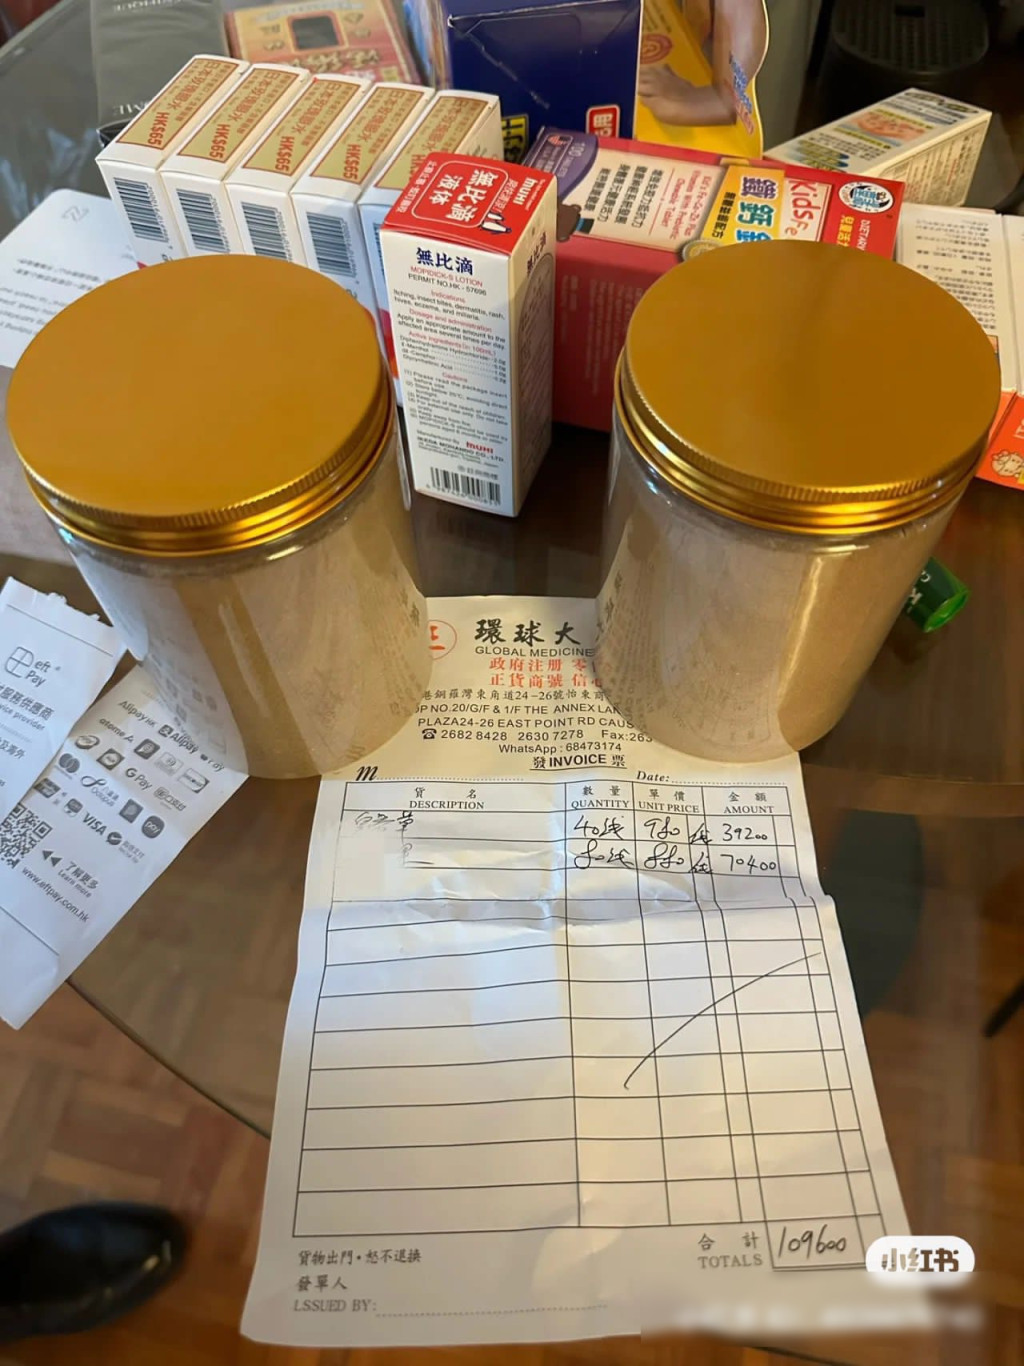 女事主上载药坊单据及药粉罐，显示被收取近11万港元天价。小红书图片